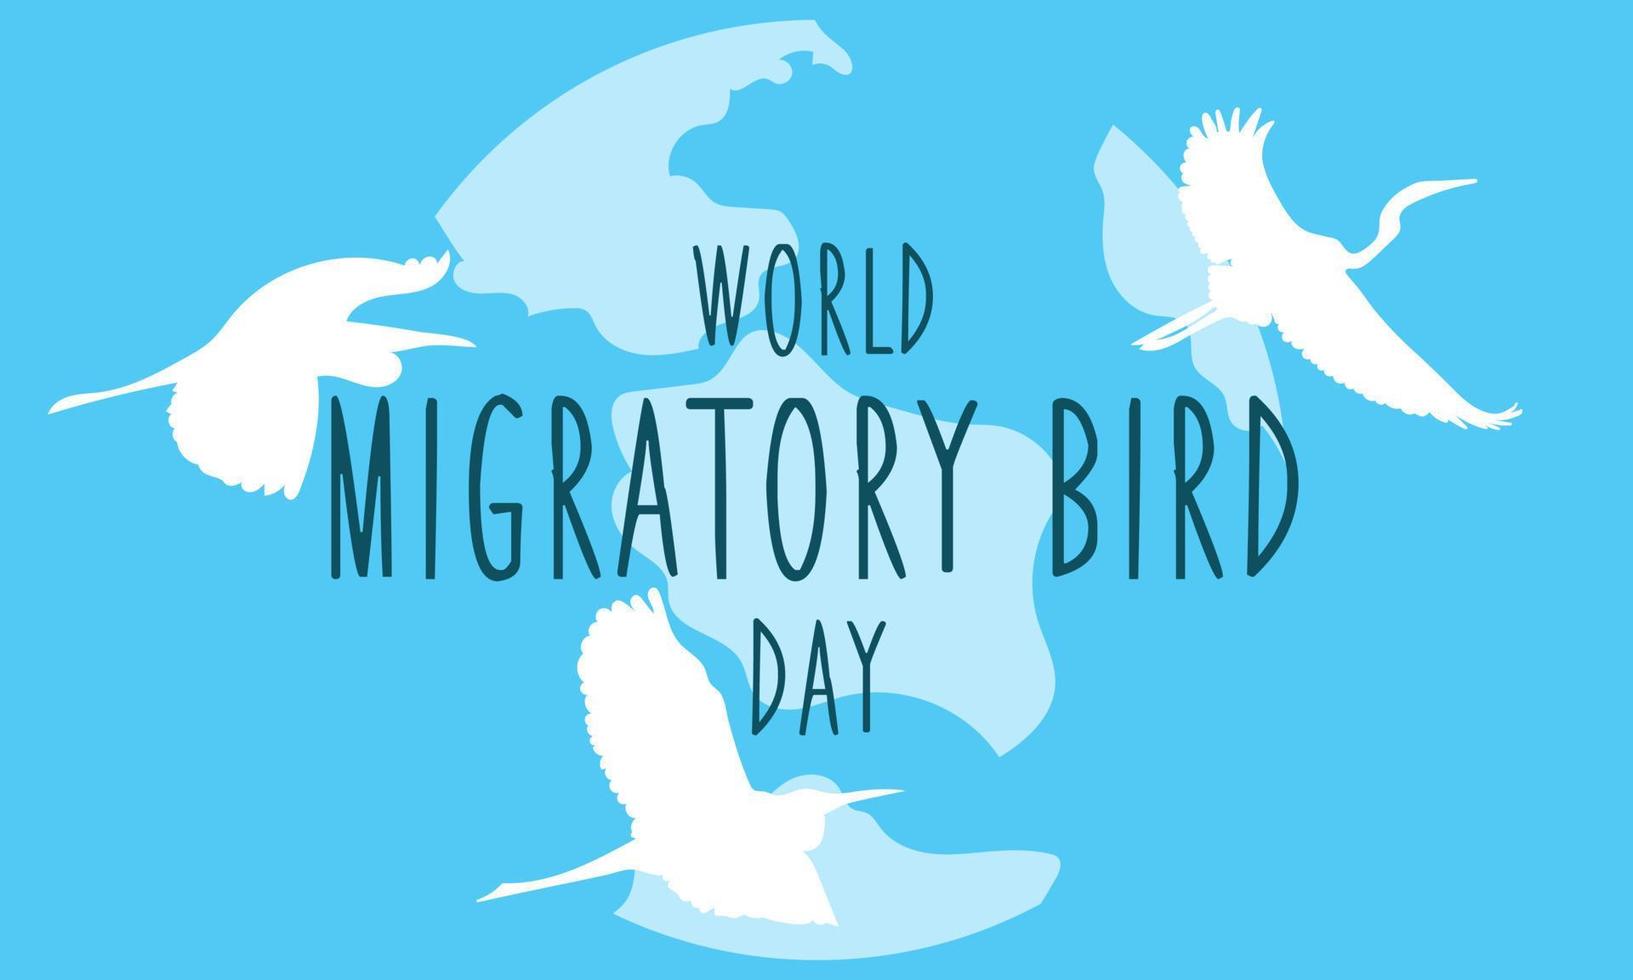 värld dag av flyttande fåglar. mall för bakgrund, baner, vykort, affisch. vektor illustration. migration av fåglar. på en blå bakgrund, vit silhuetter av flygande storkar med de inskrift